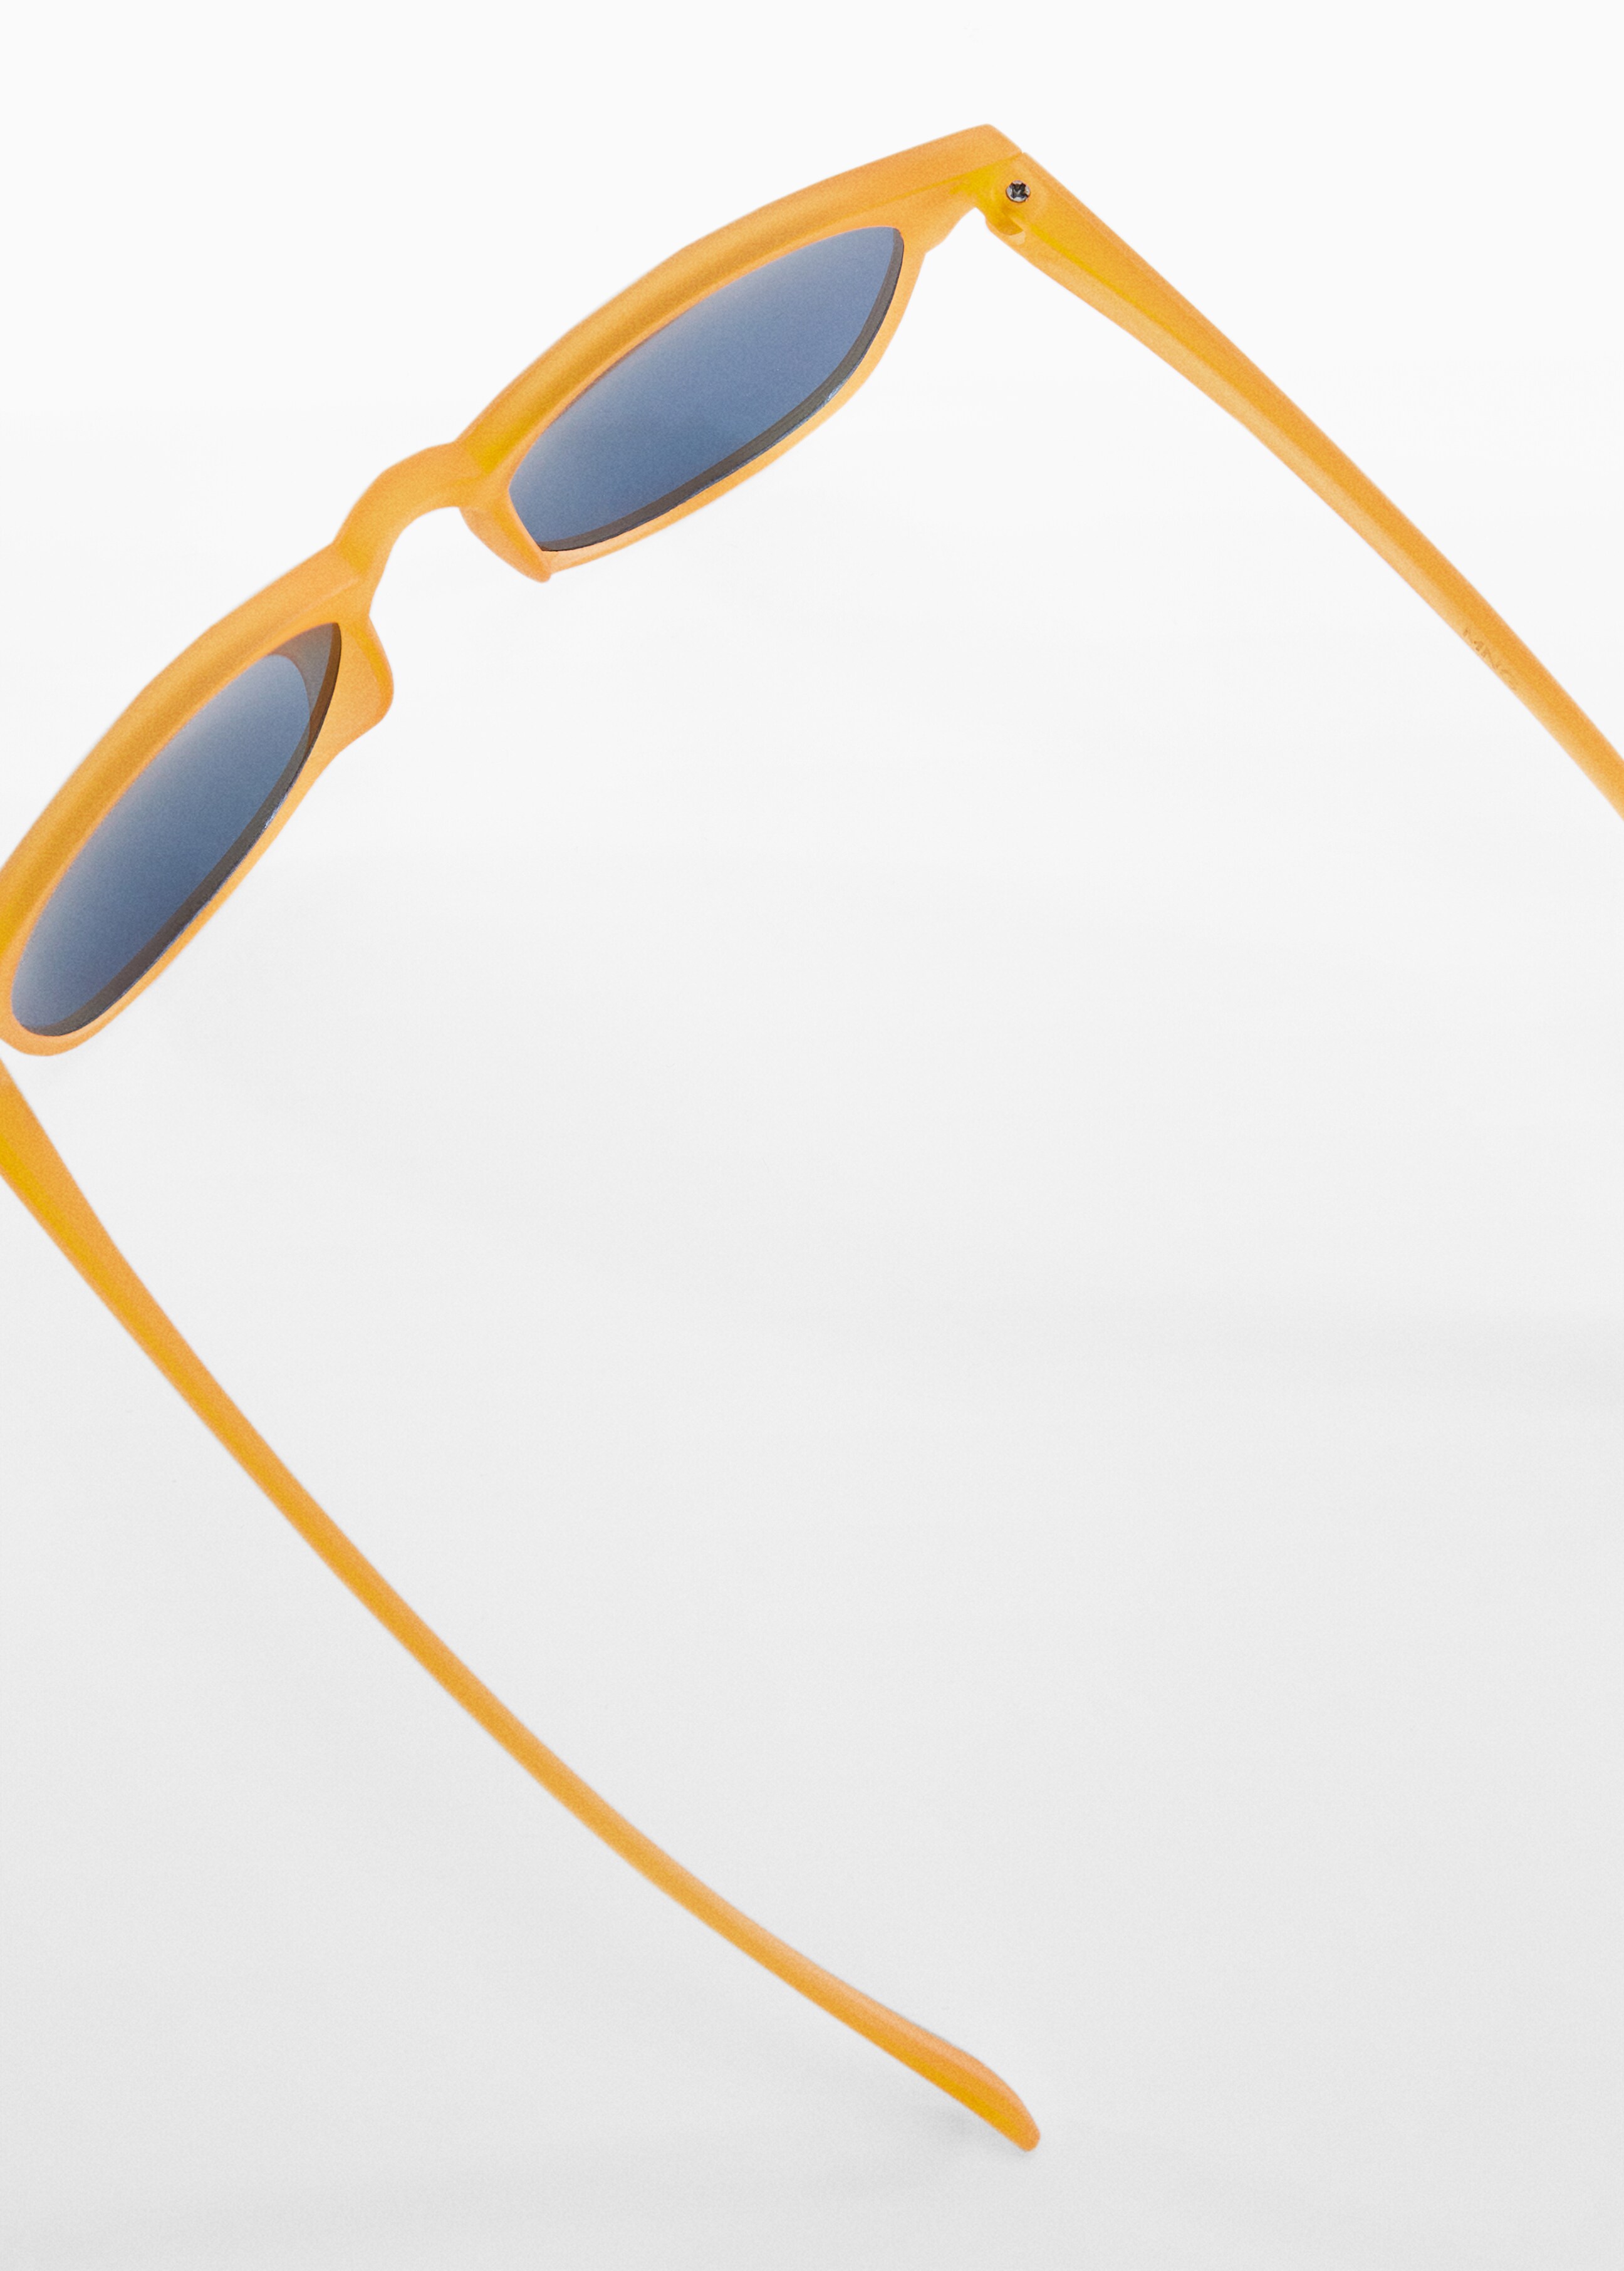 Acetátkeretes napszemüveg - A termék adatai 1